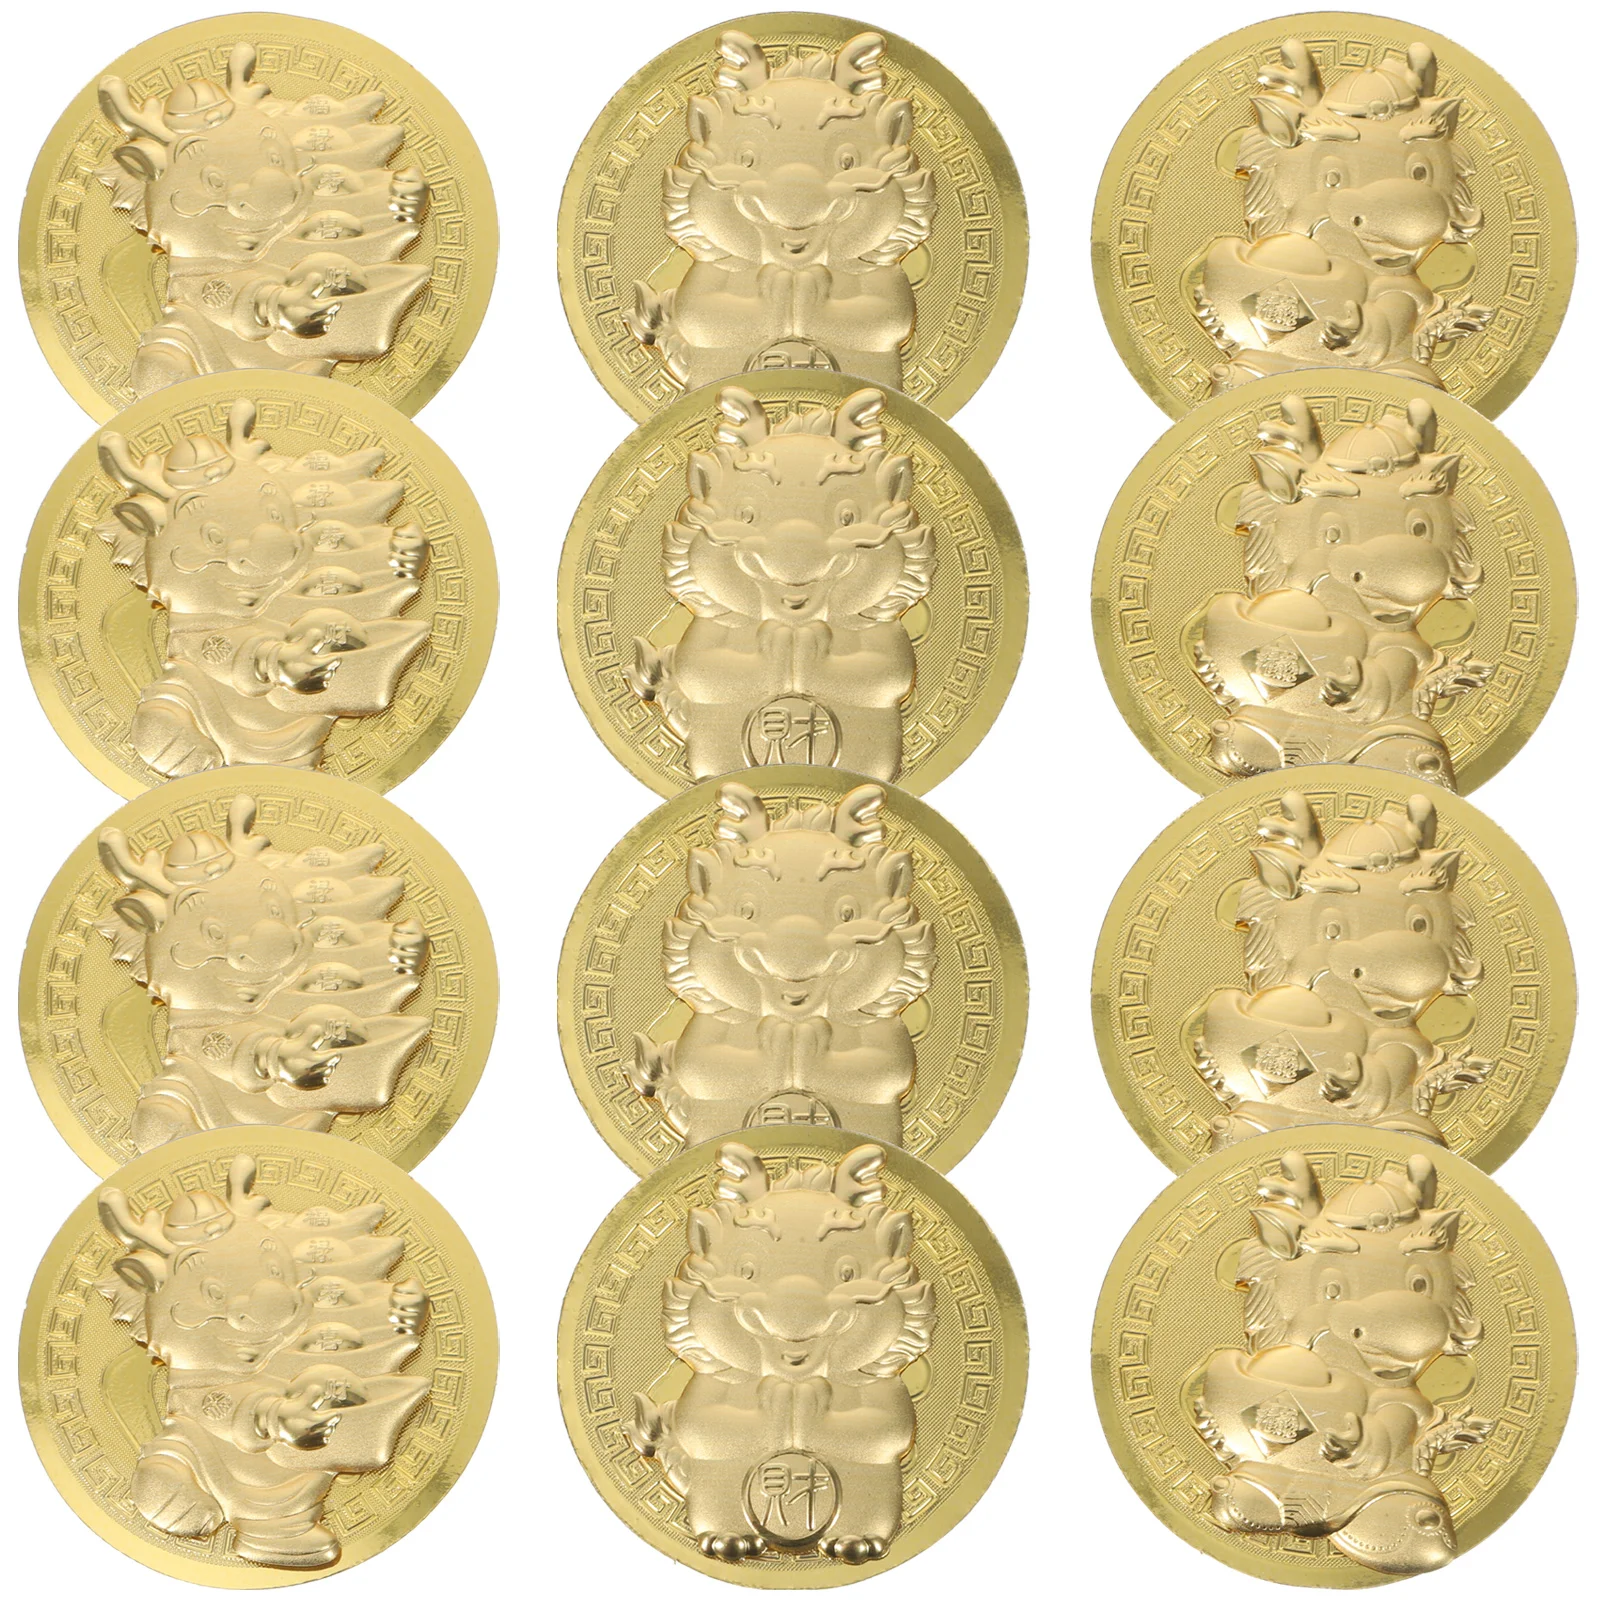 

12 комплектов монет зодиака Год Дракона памятные монеты сувенирные монеты с чехлами